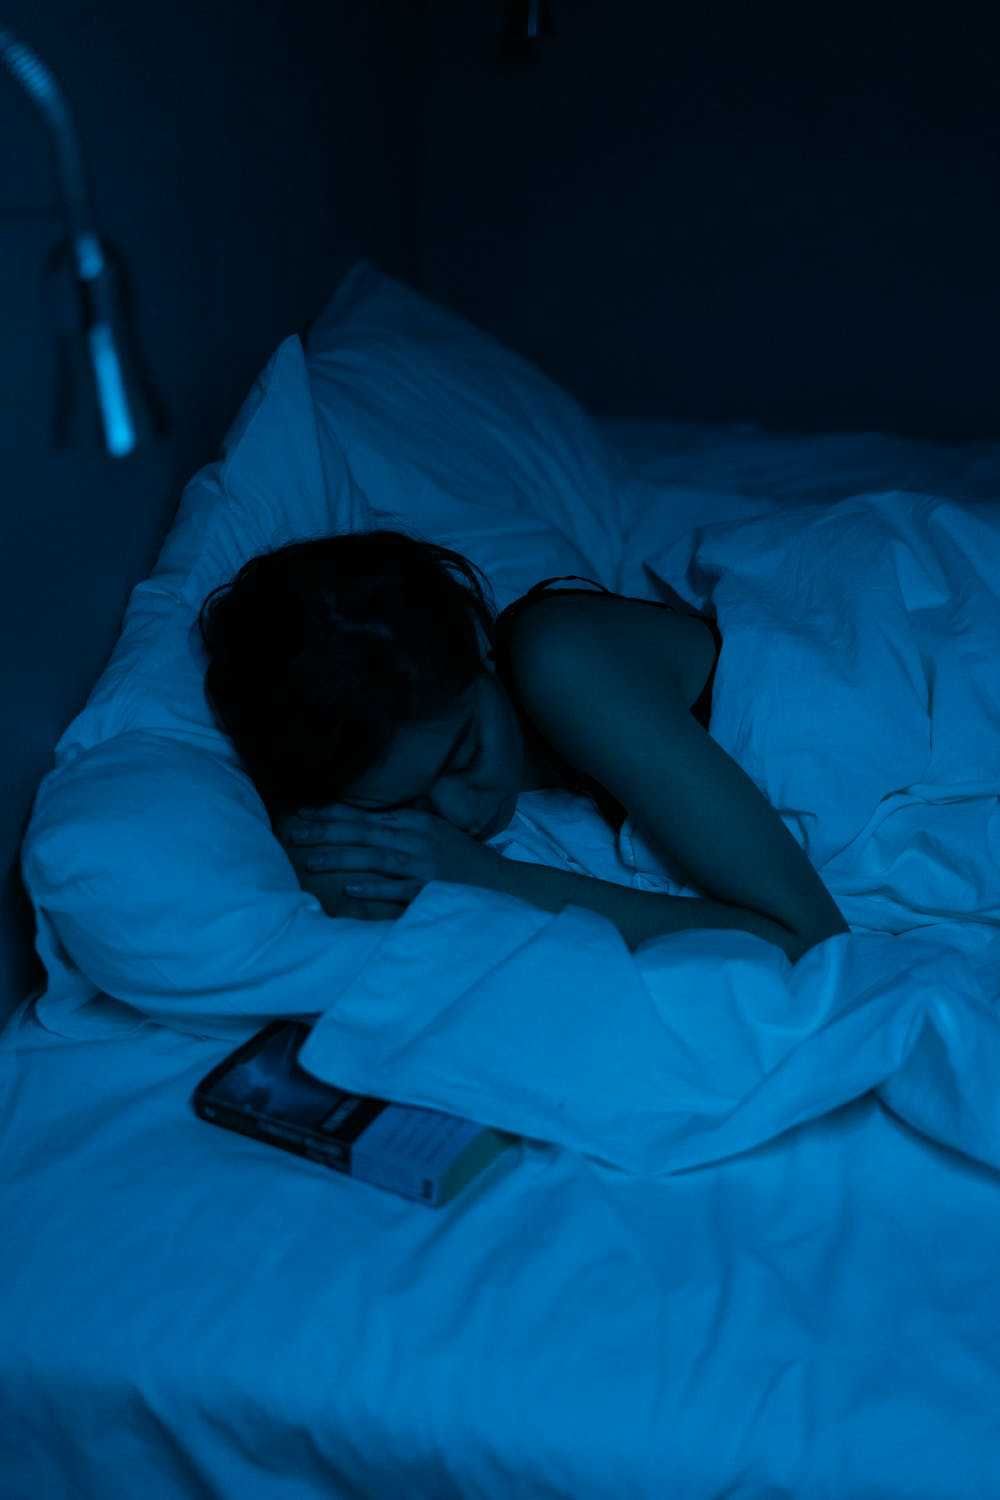 Wanita Wajib Tahu! Inilah Manfaat Melepas Bra Saat Tidur Bagi Kesehatan -  Poinfomedia